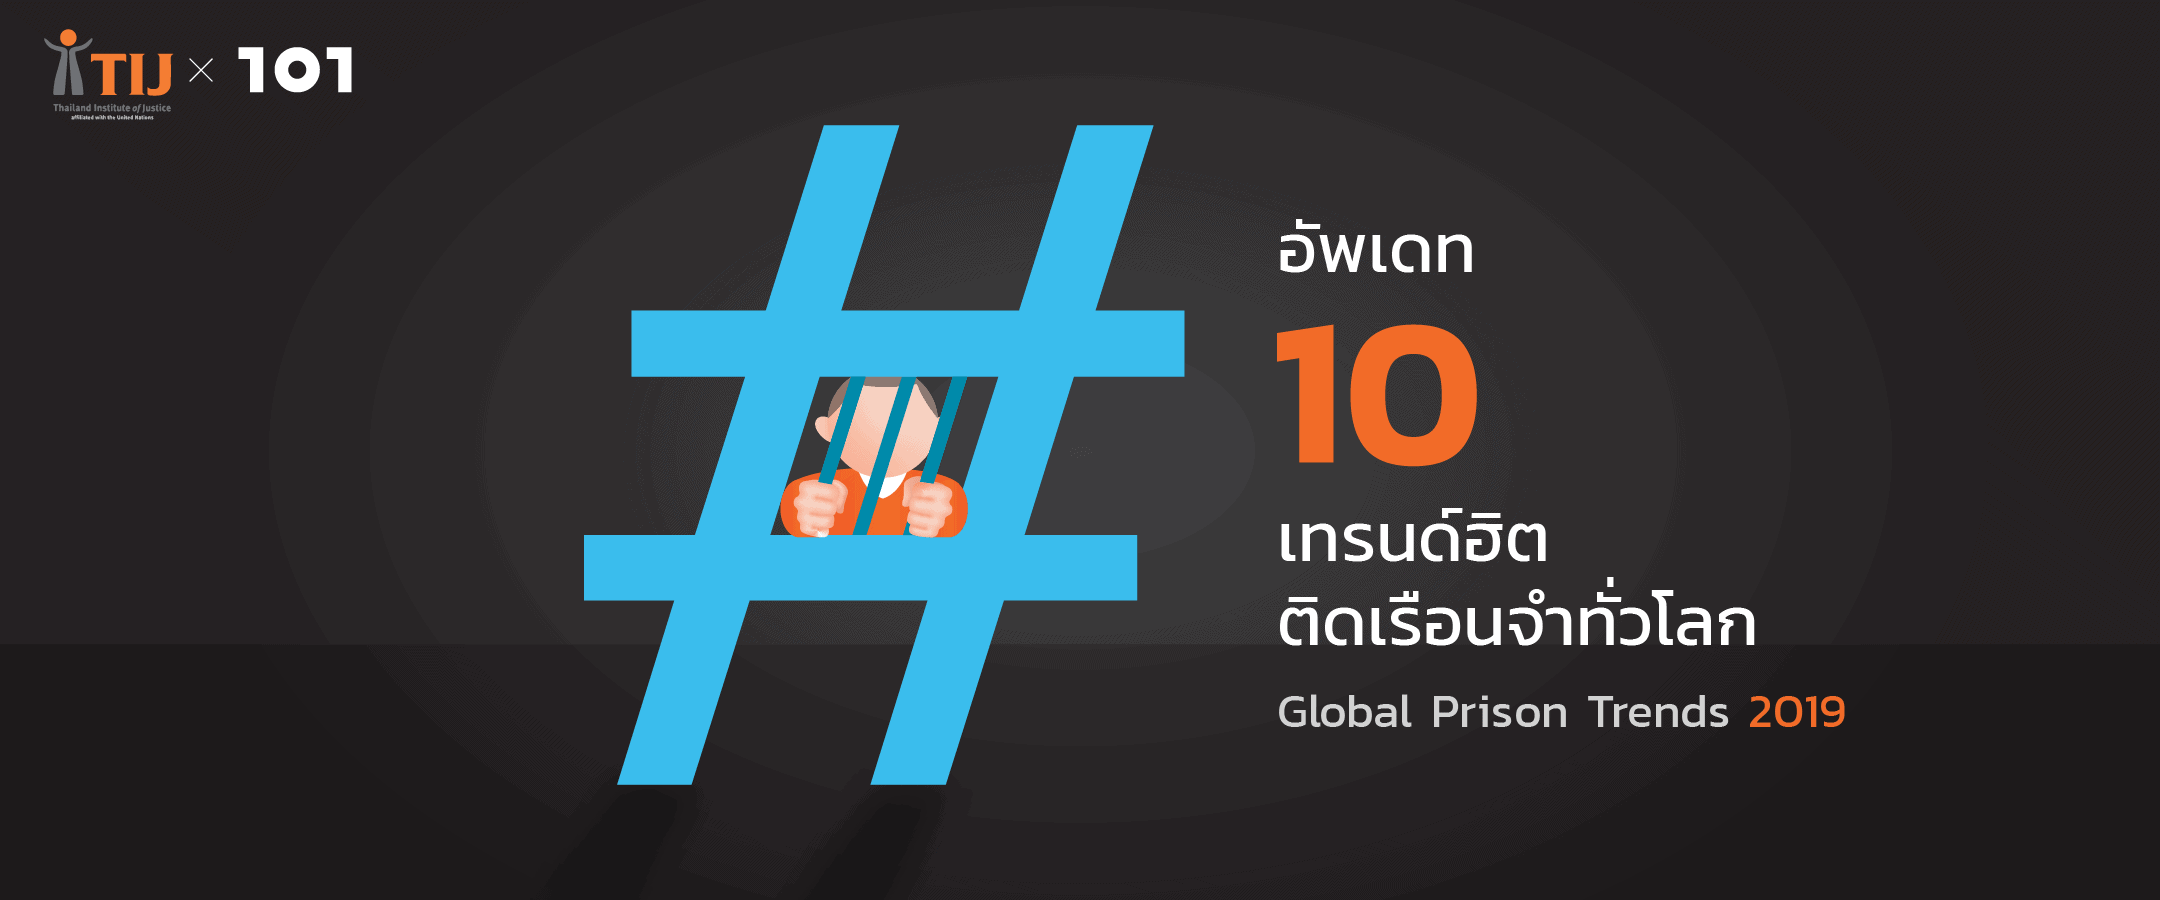 อัพเดท 10 เทรนด์ฮิต ติดเรือนจำทั่วโลก จากรายงาน Global Prison Trends 2019